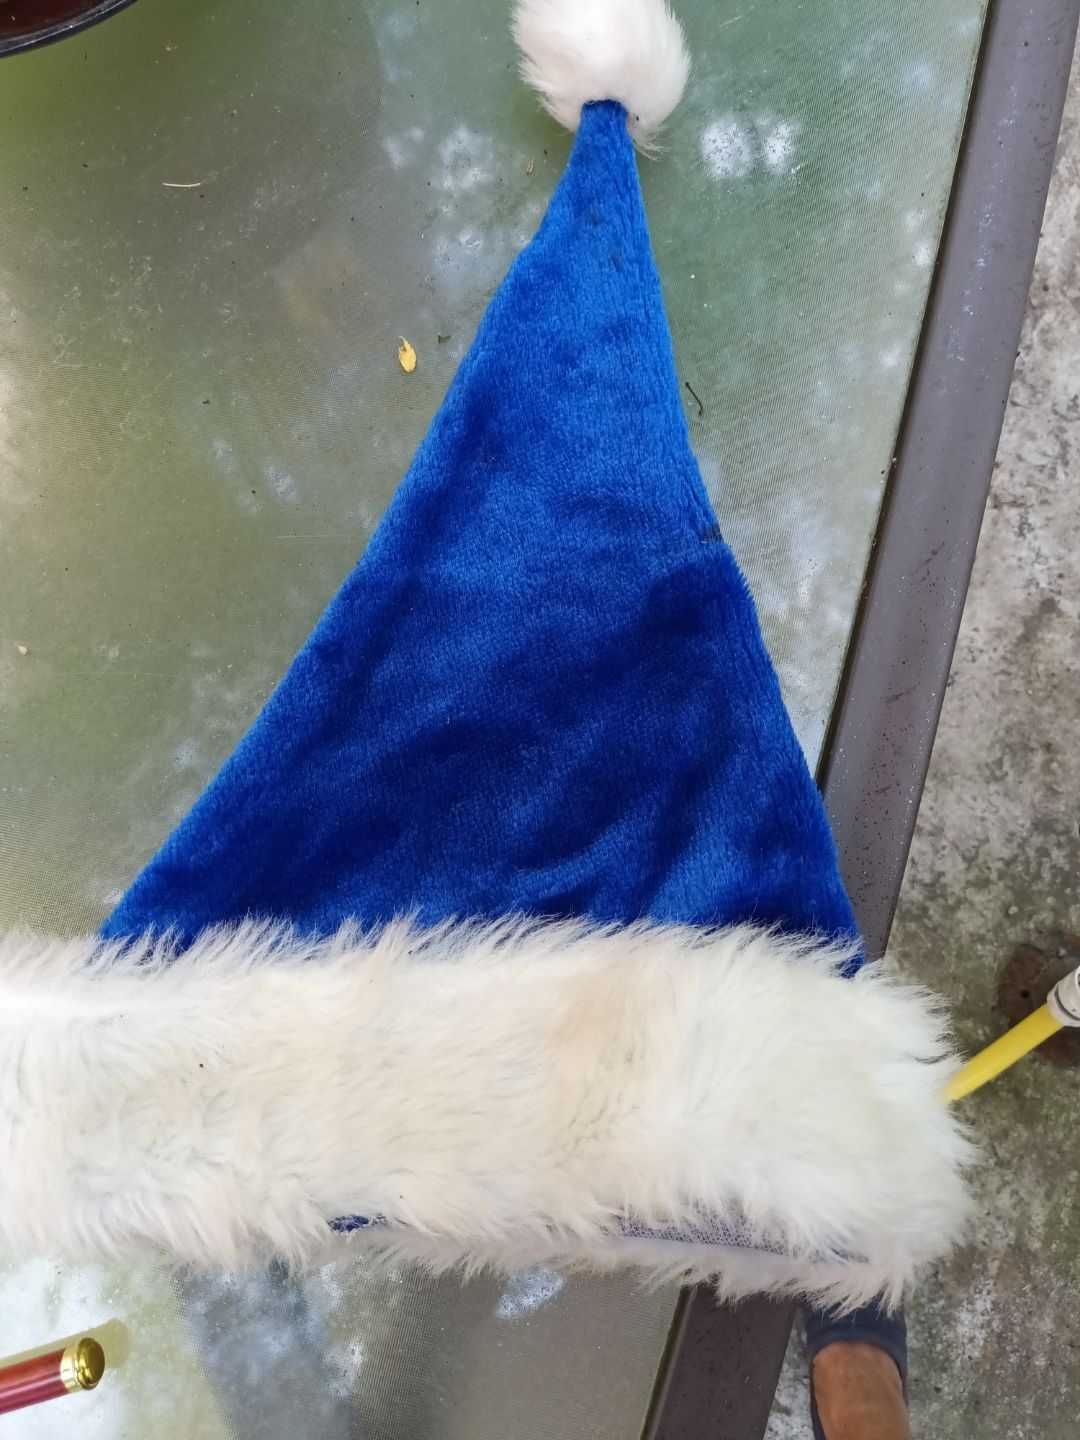 czapka niebieska